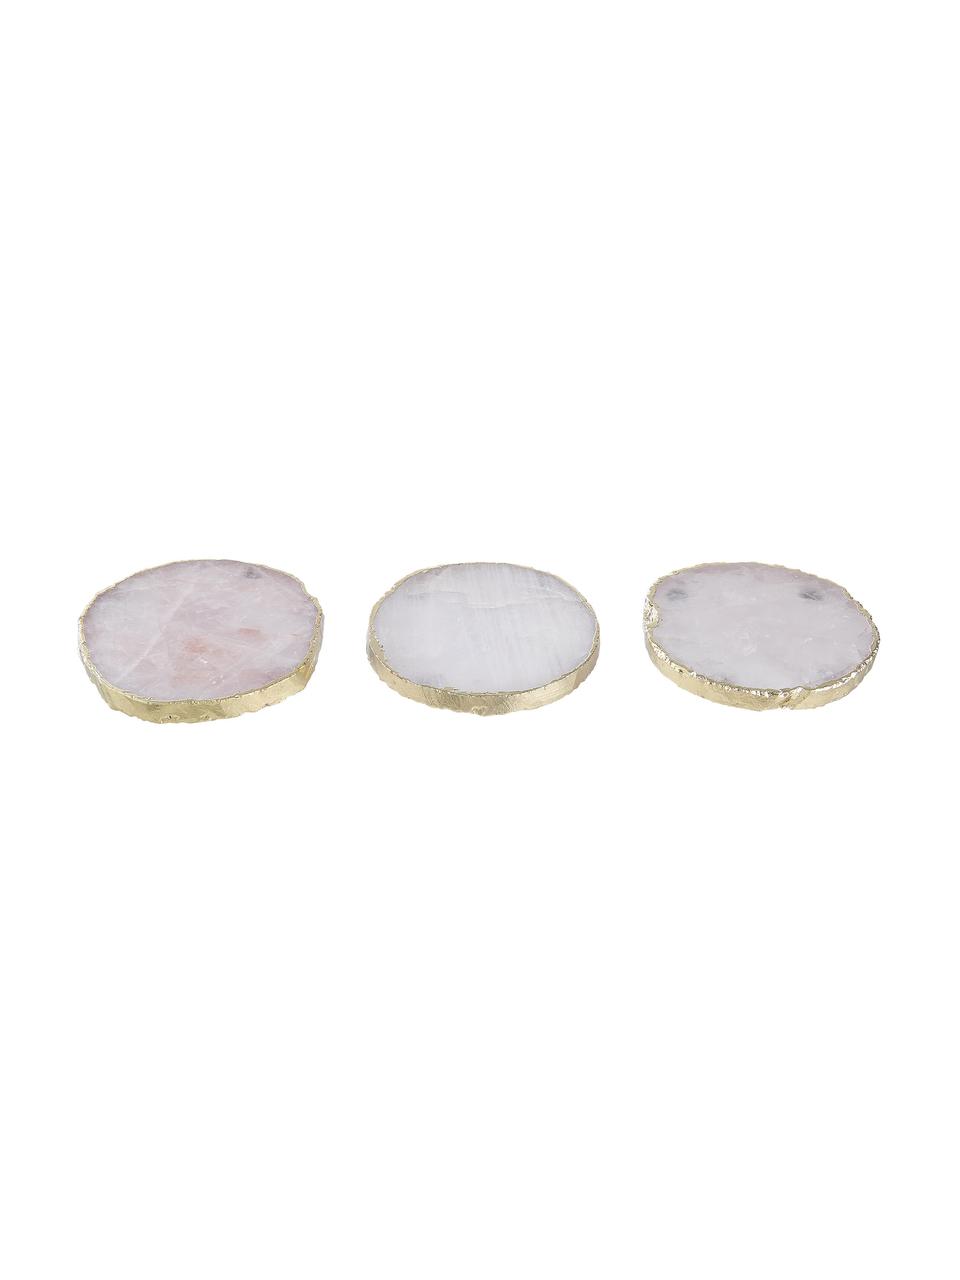 Podstawka z kamienia szlachetnego Crystal, 4 szt., Kwarc różowy, Bladoróżowy kwarc, odcienie złotego, Ø 11 cm